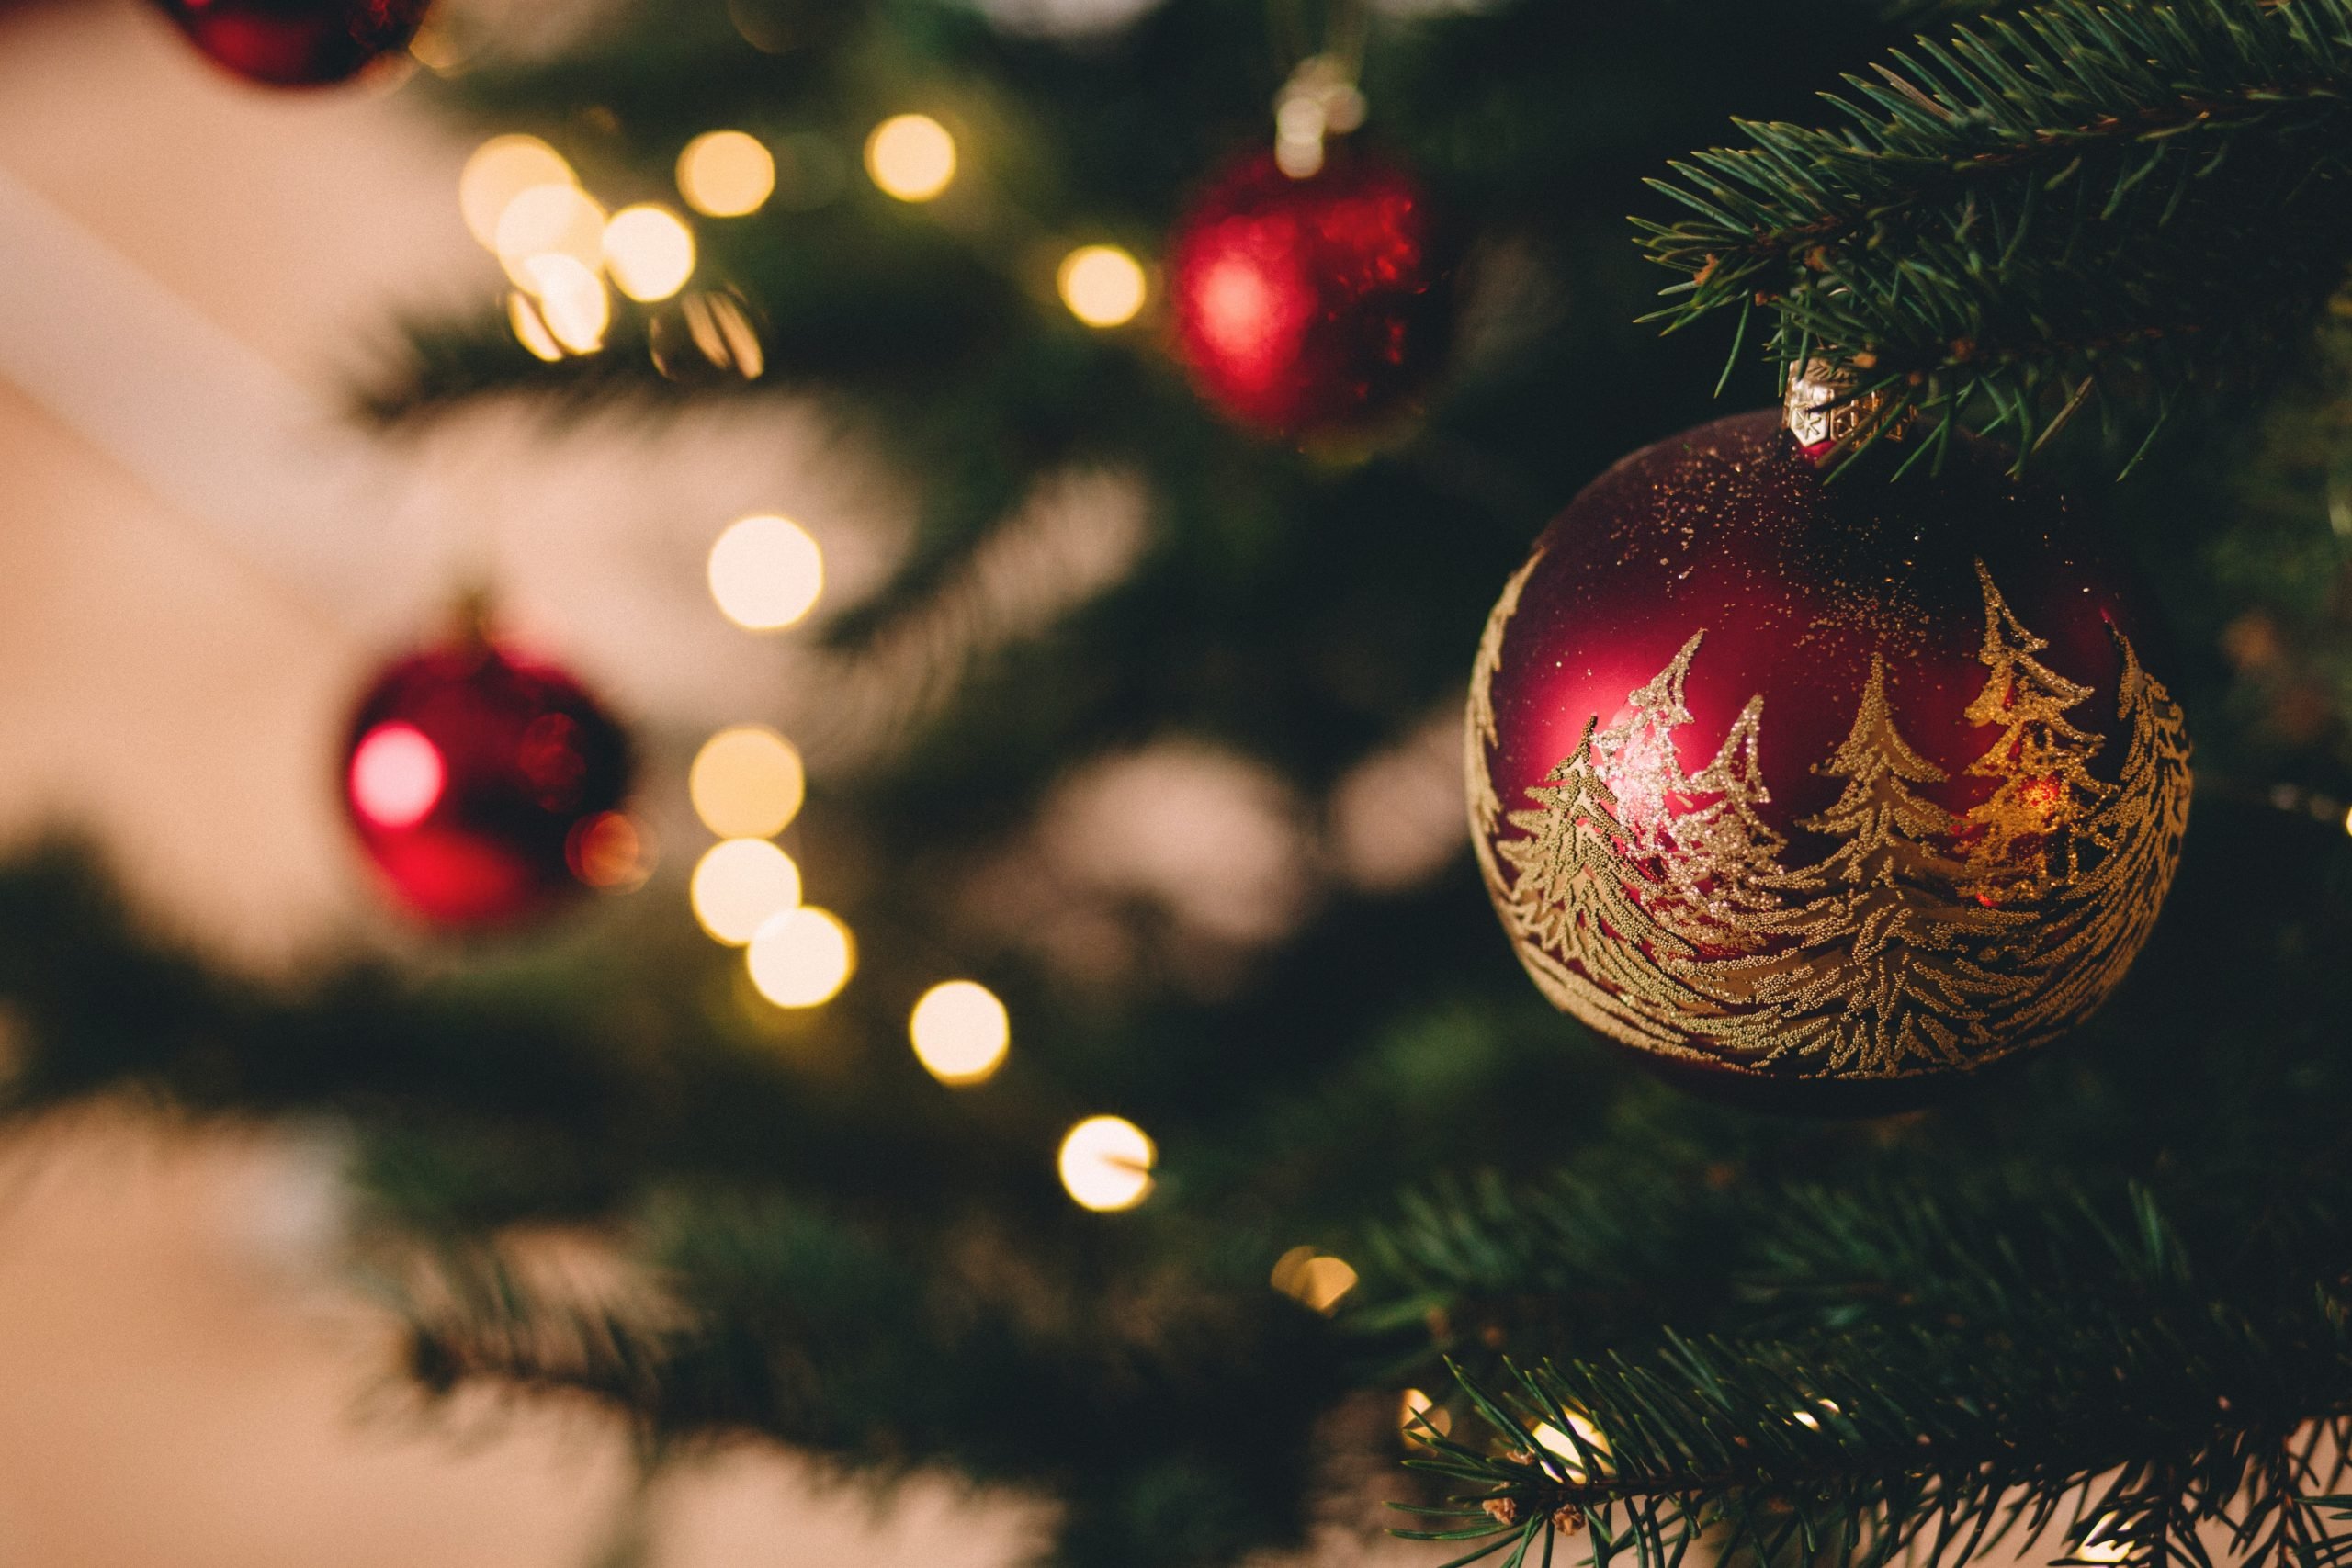 Confartigianato sulle feste natalizie: “La politica pensa più a chiudere che a riaprire”